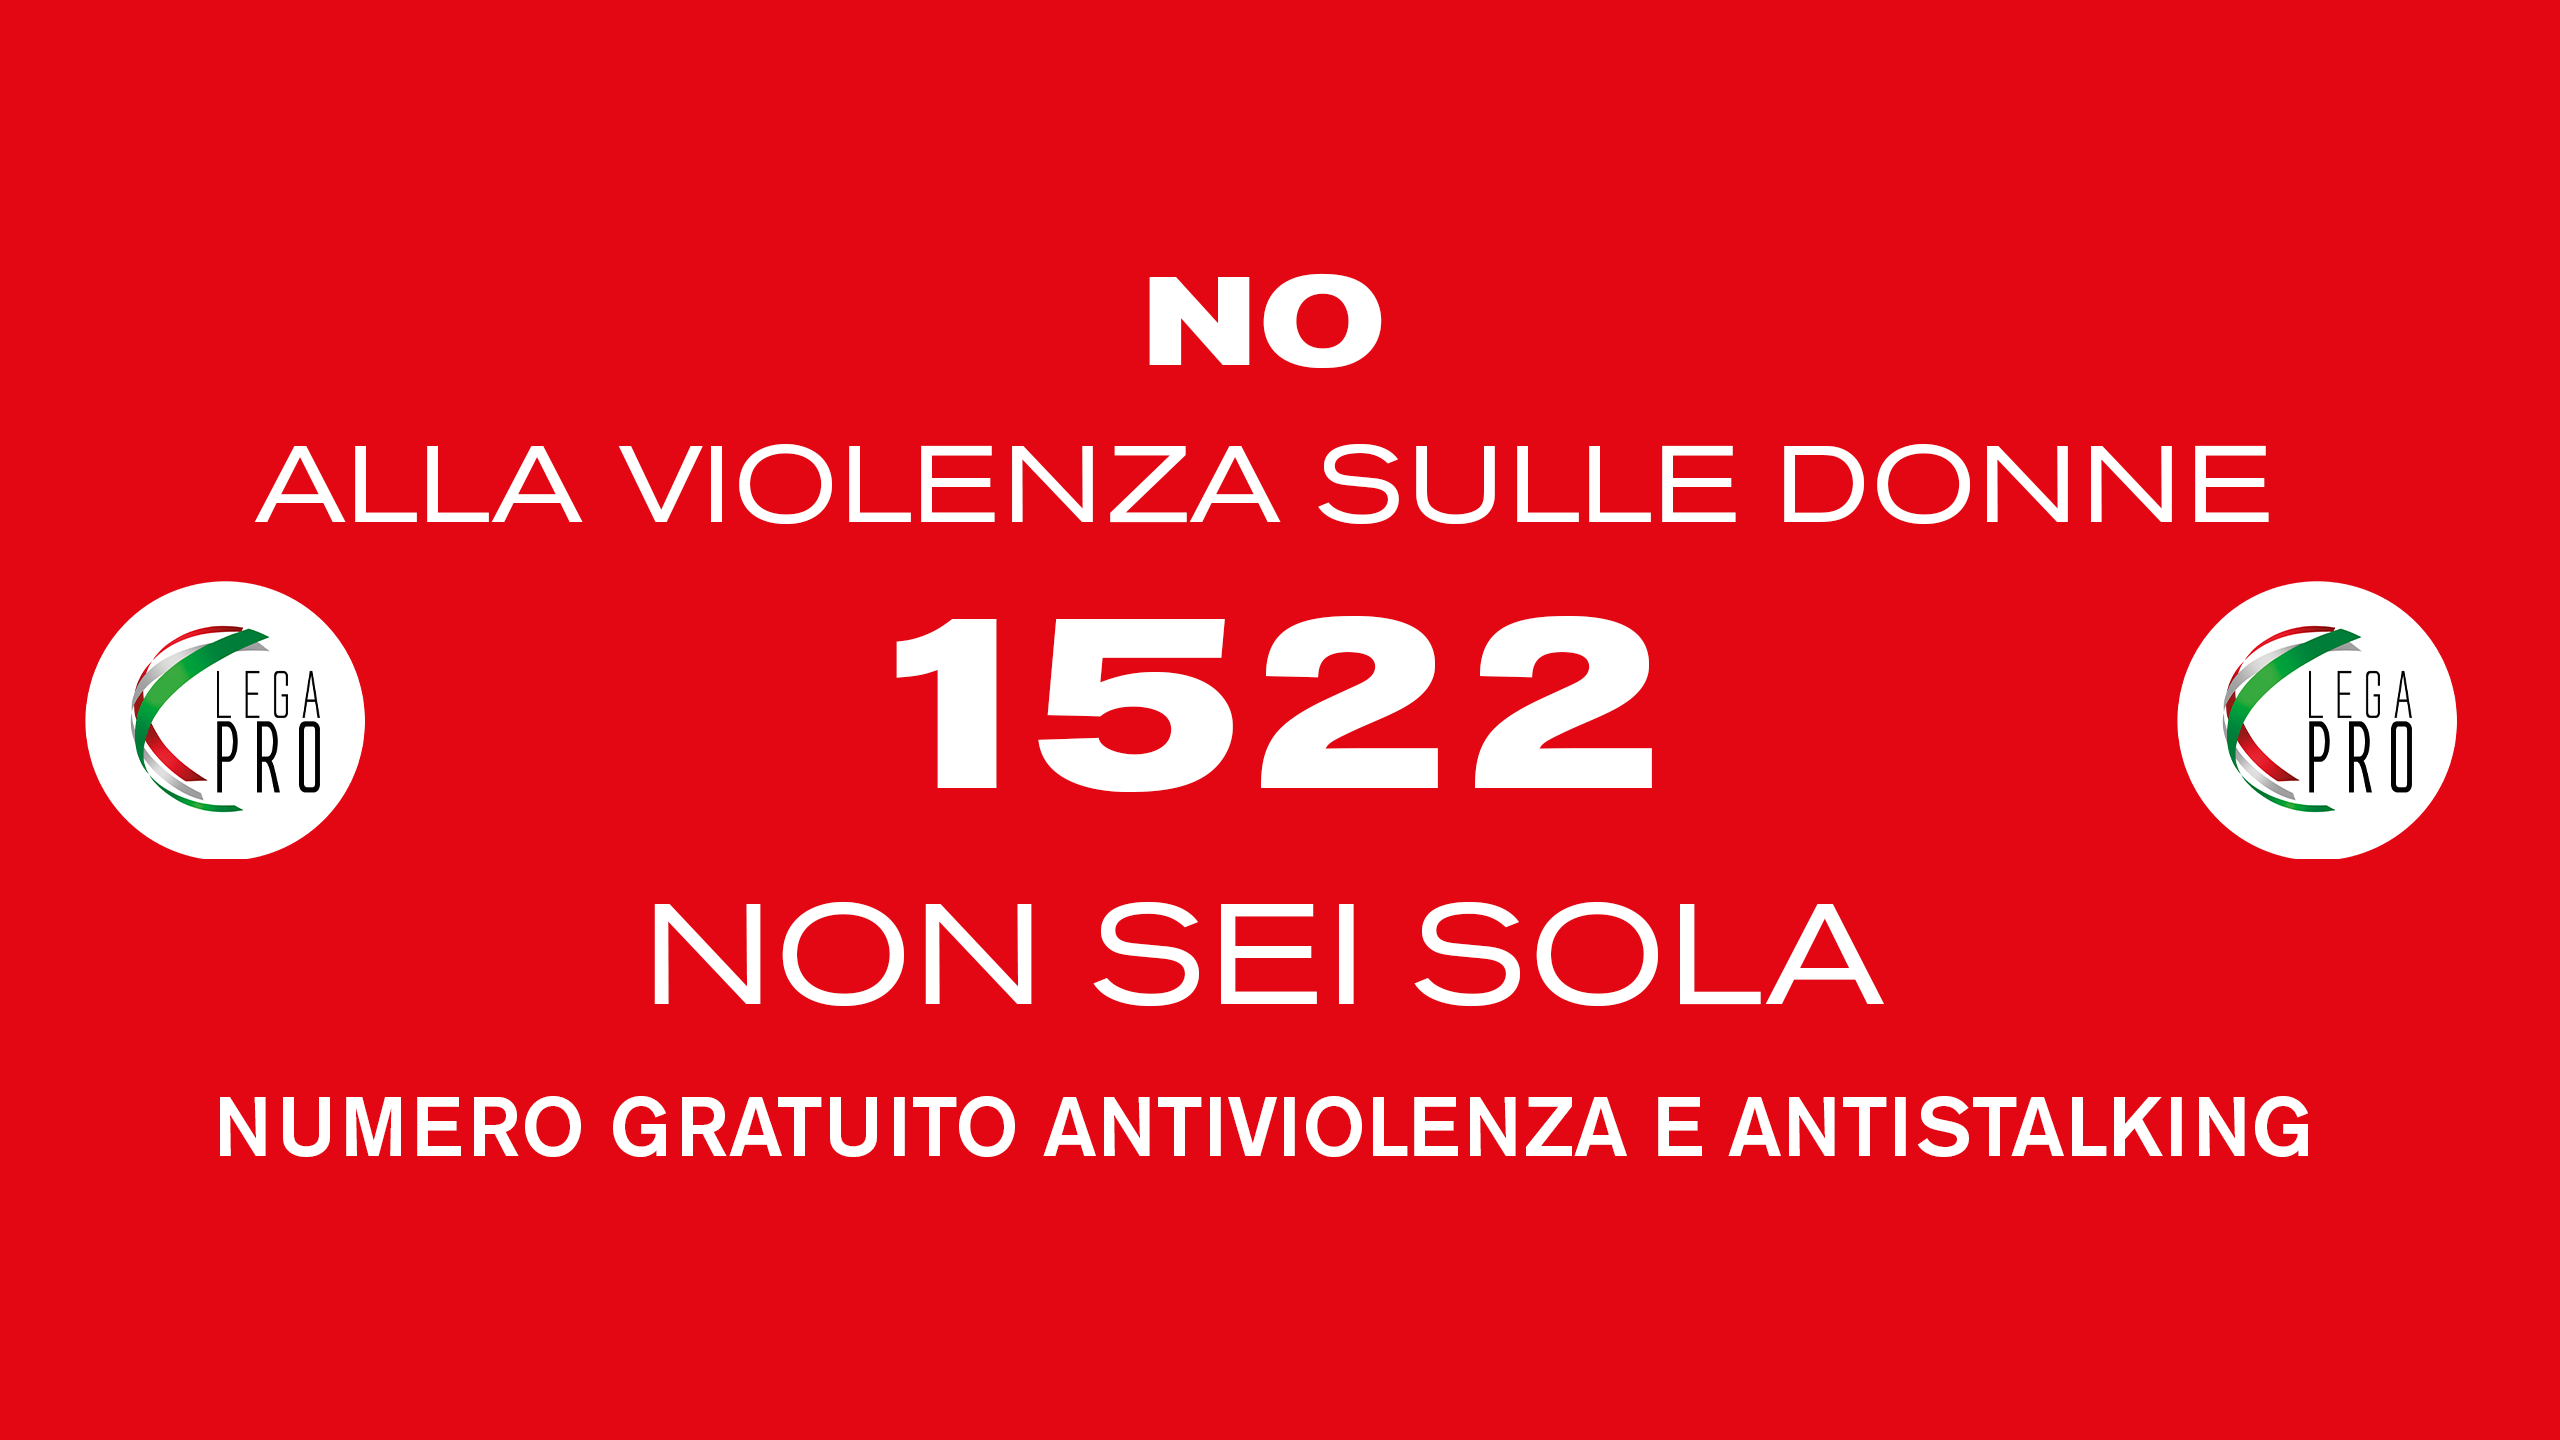 CODICE ROSSO, il numero anti-violenza 